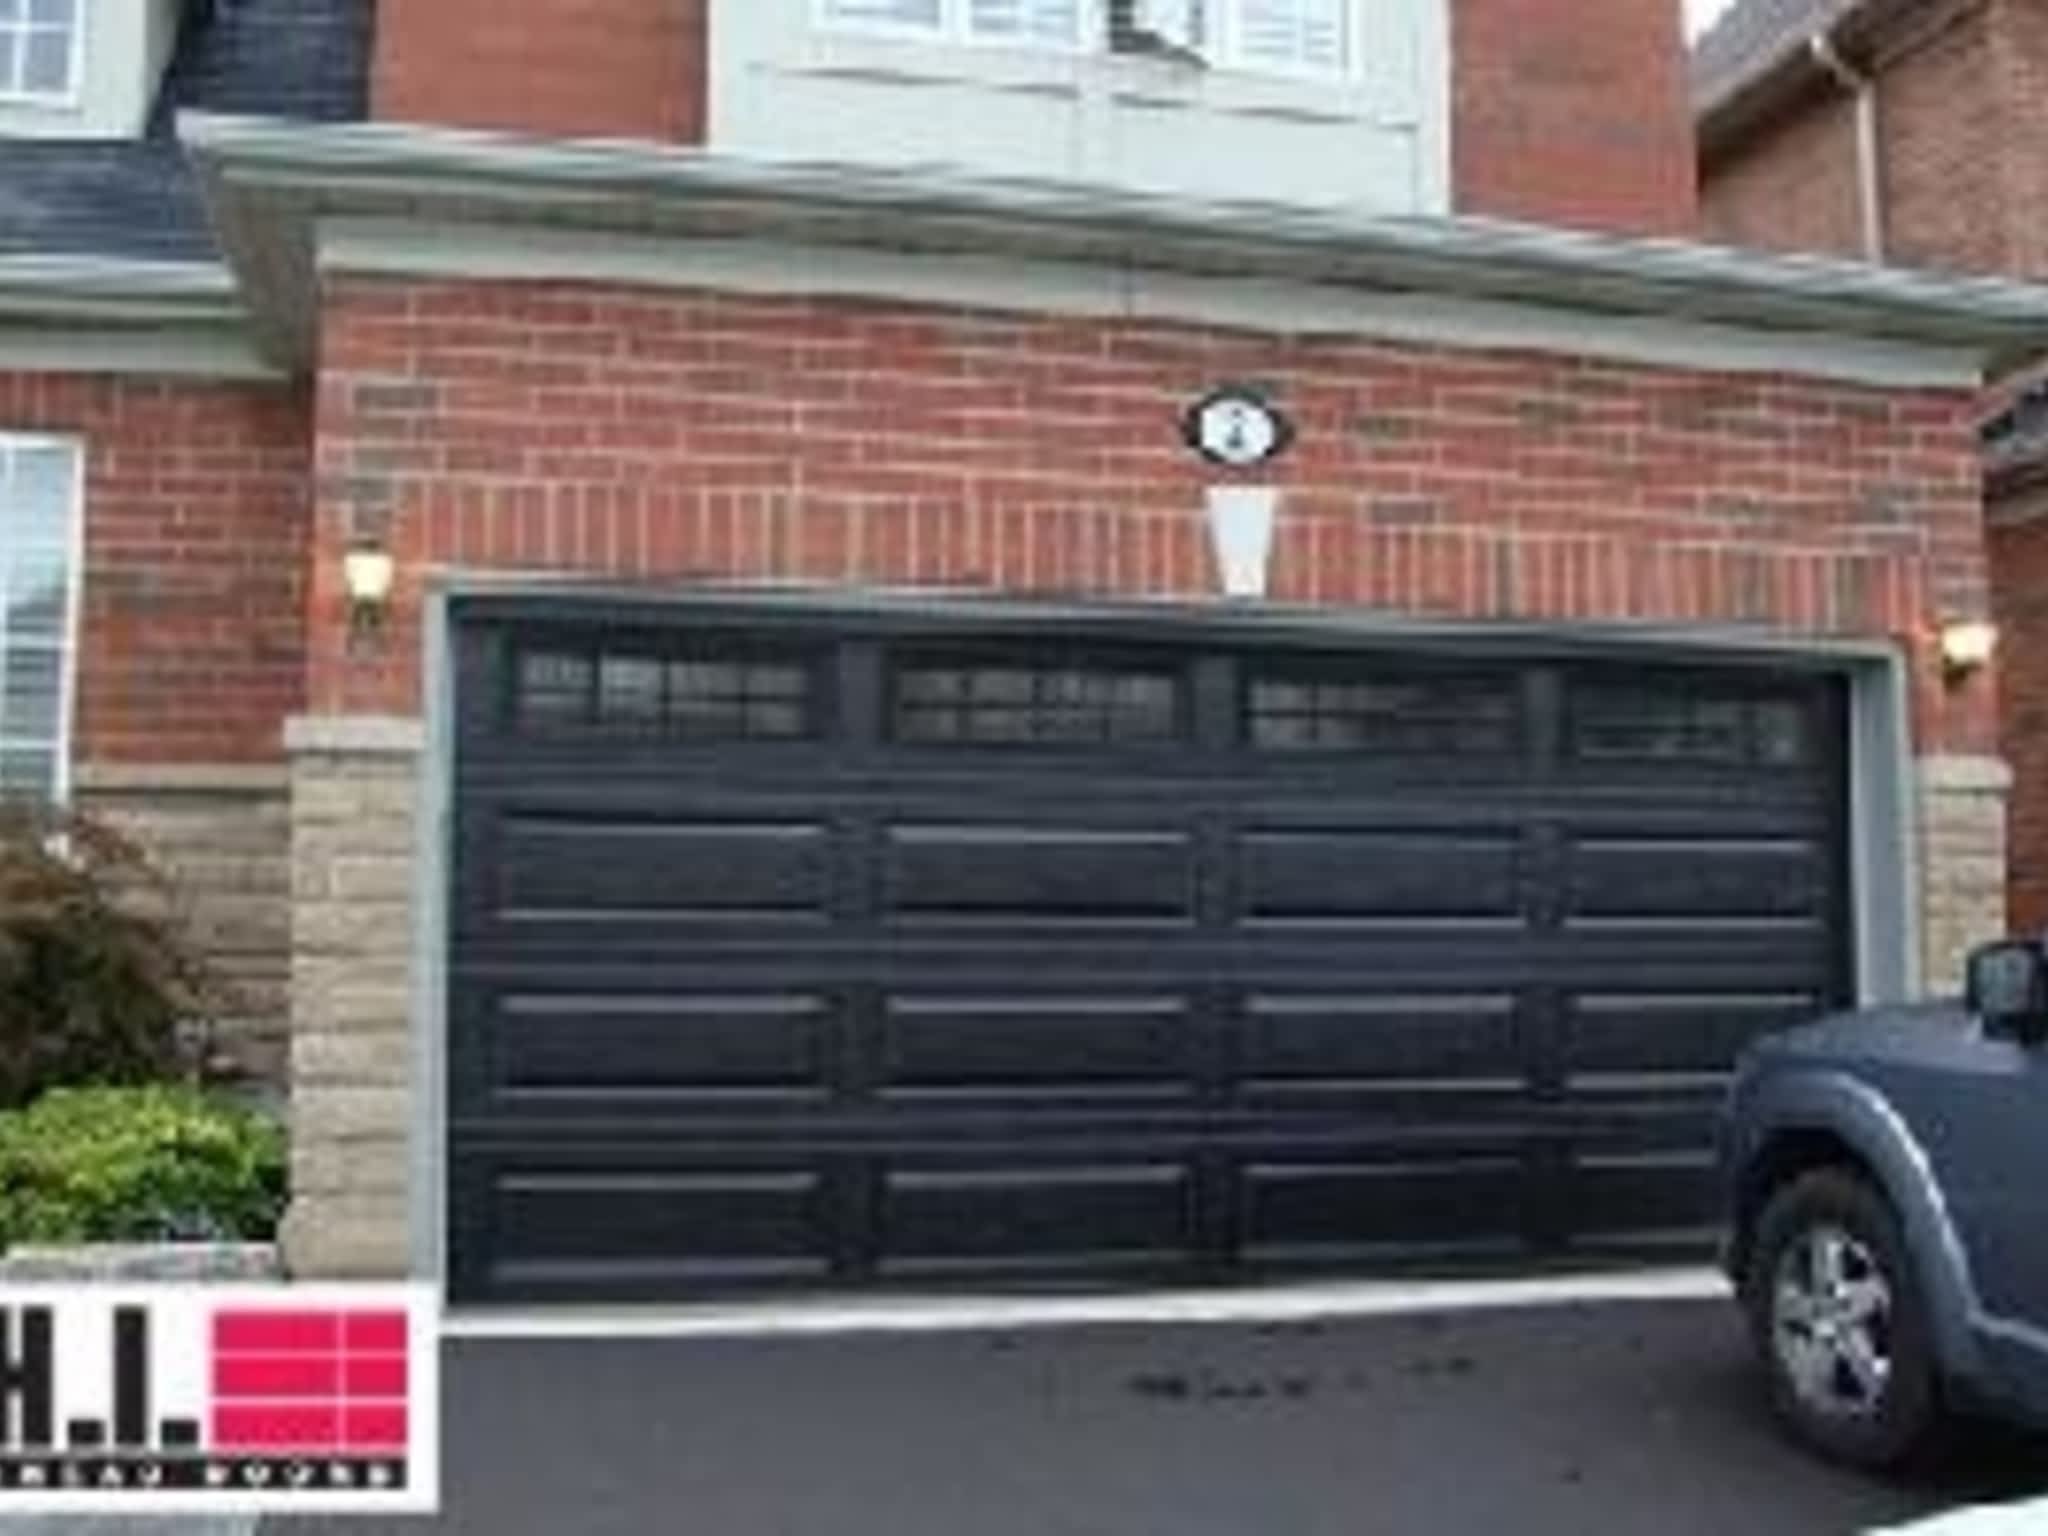 photo Dodds Garage Door Systems Inc